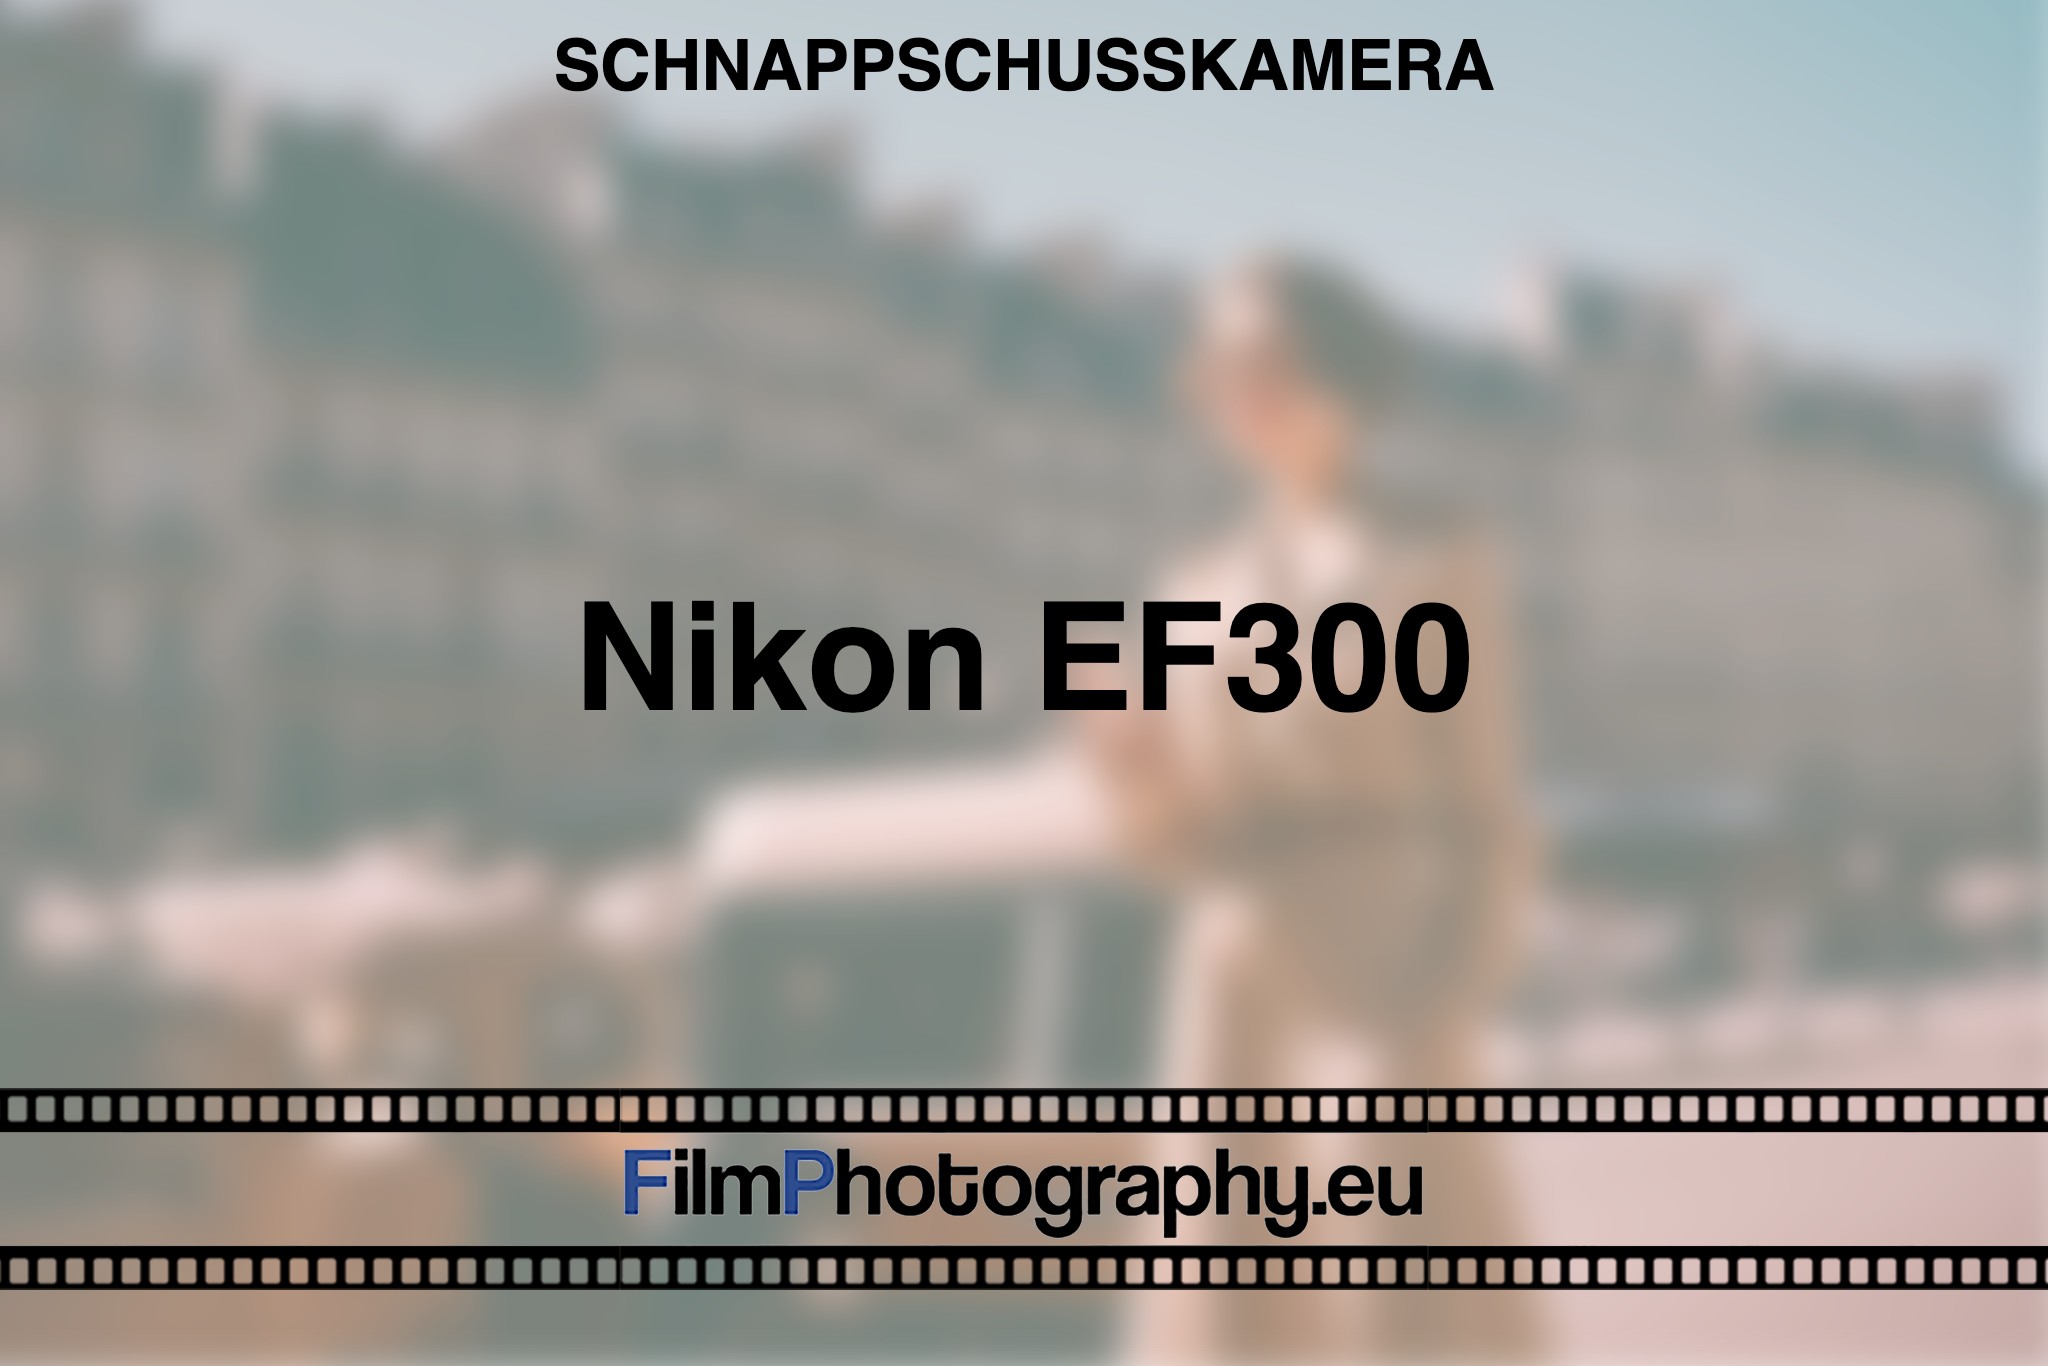 nikon-ef300-schnappschusskamera-bnv